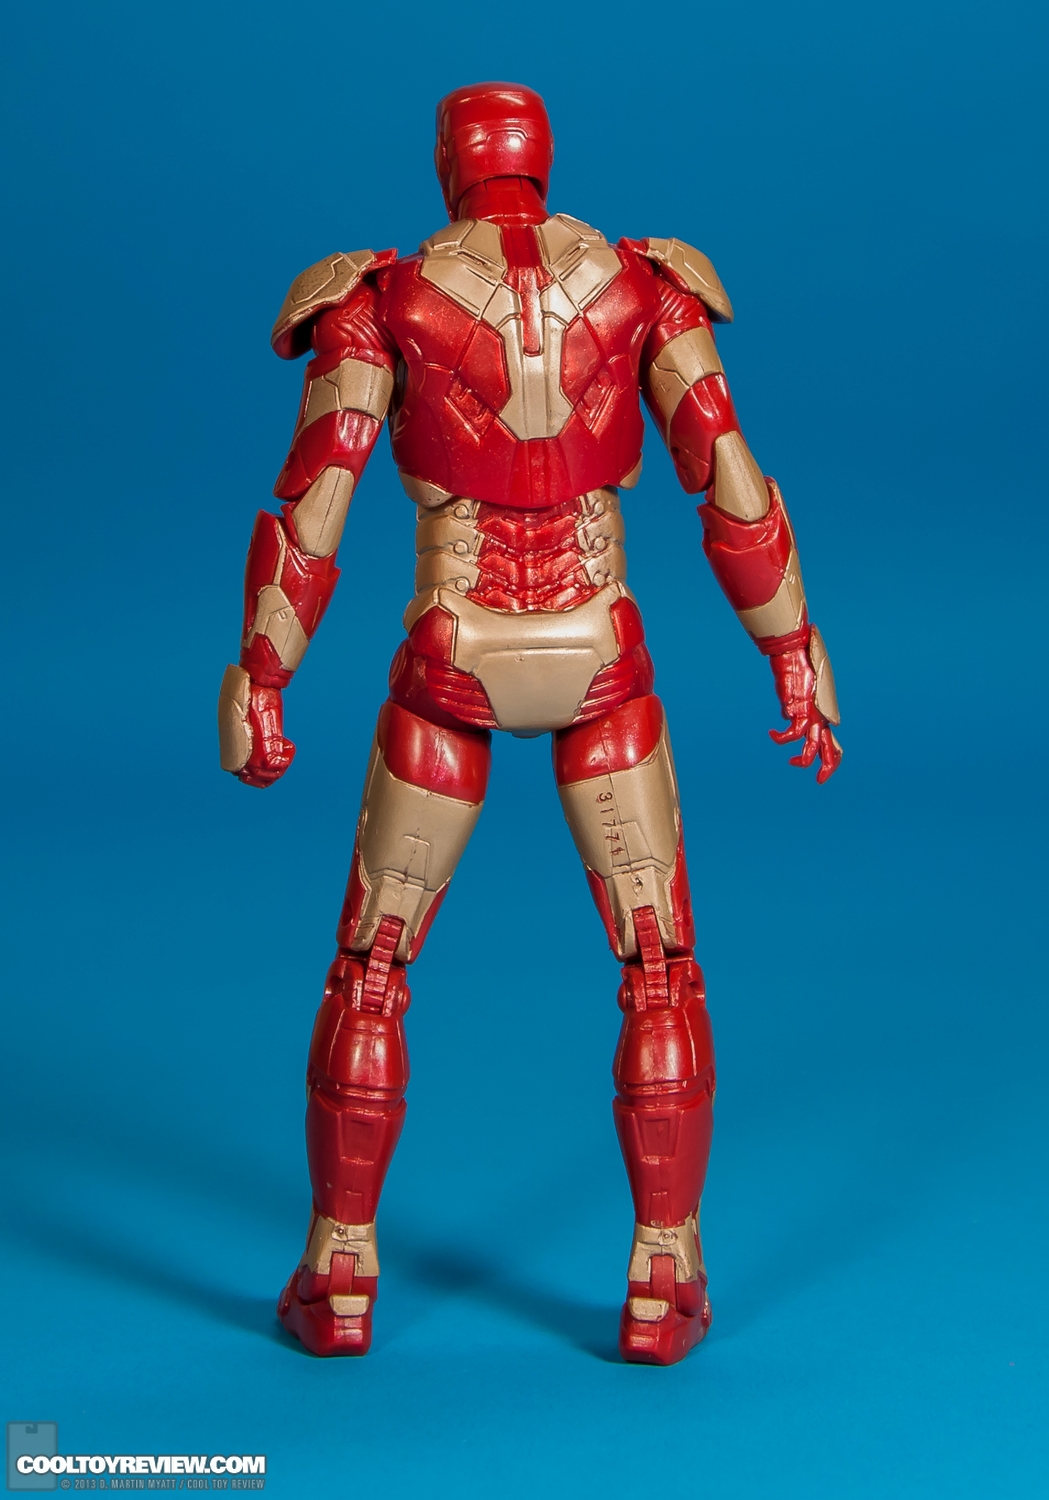 Iron-Man-Mark-42-Marvel-Legends-Iron-Monger-Series-004.jpg